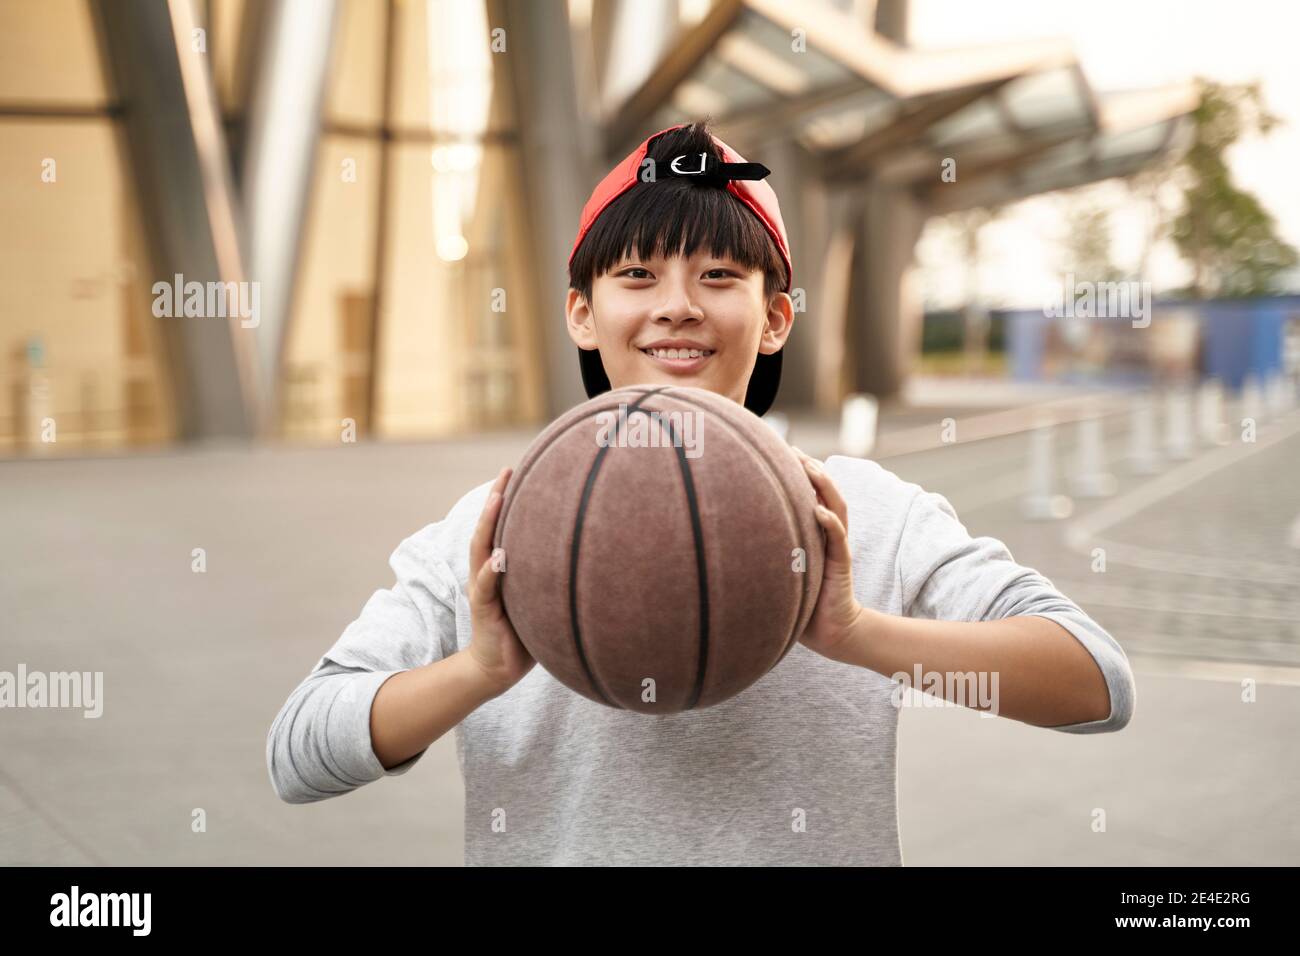 portrait en plein air d'un joyeux joueur asiatique de basket-ball adolescent de 15 ans Banque D'Images